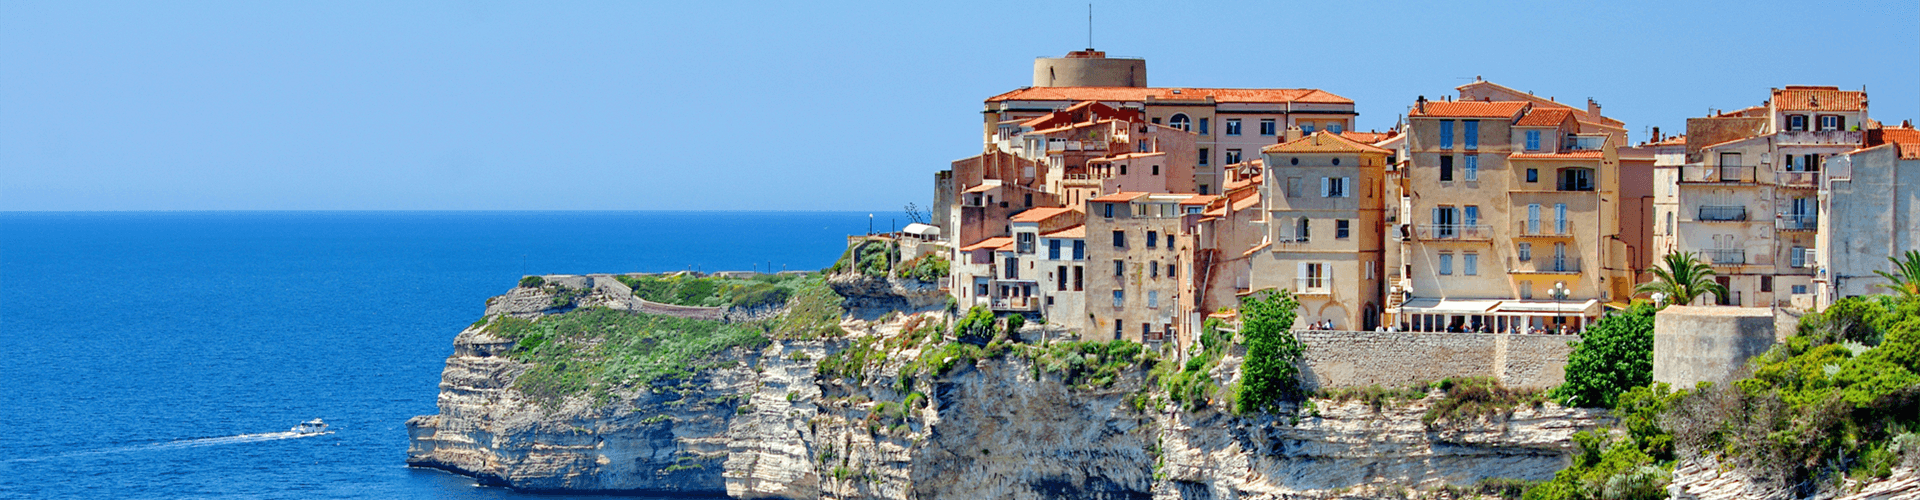 Vakantie op Corsica, eiland van Frankrijk in de Middellandse Zee